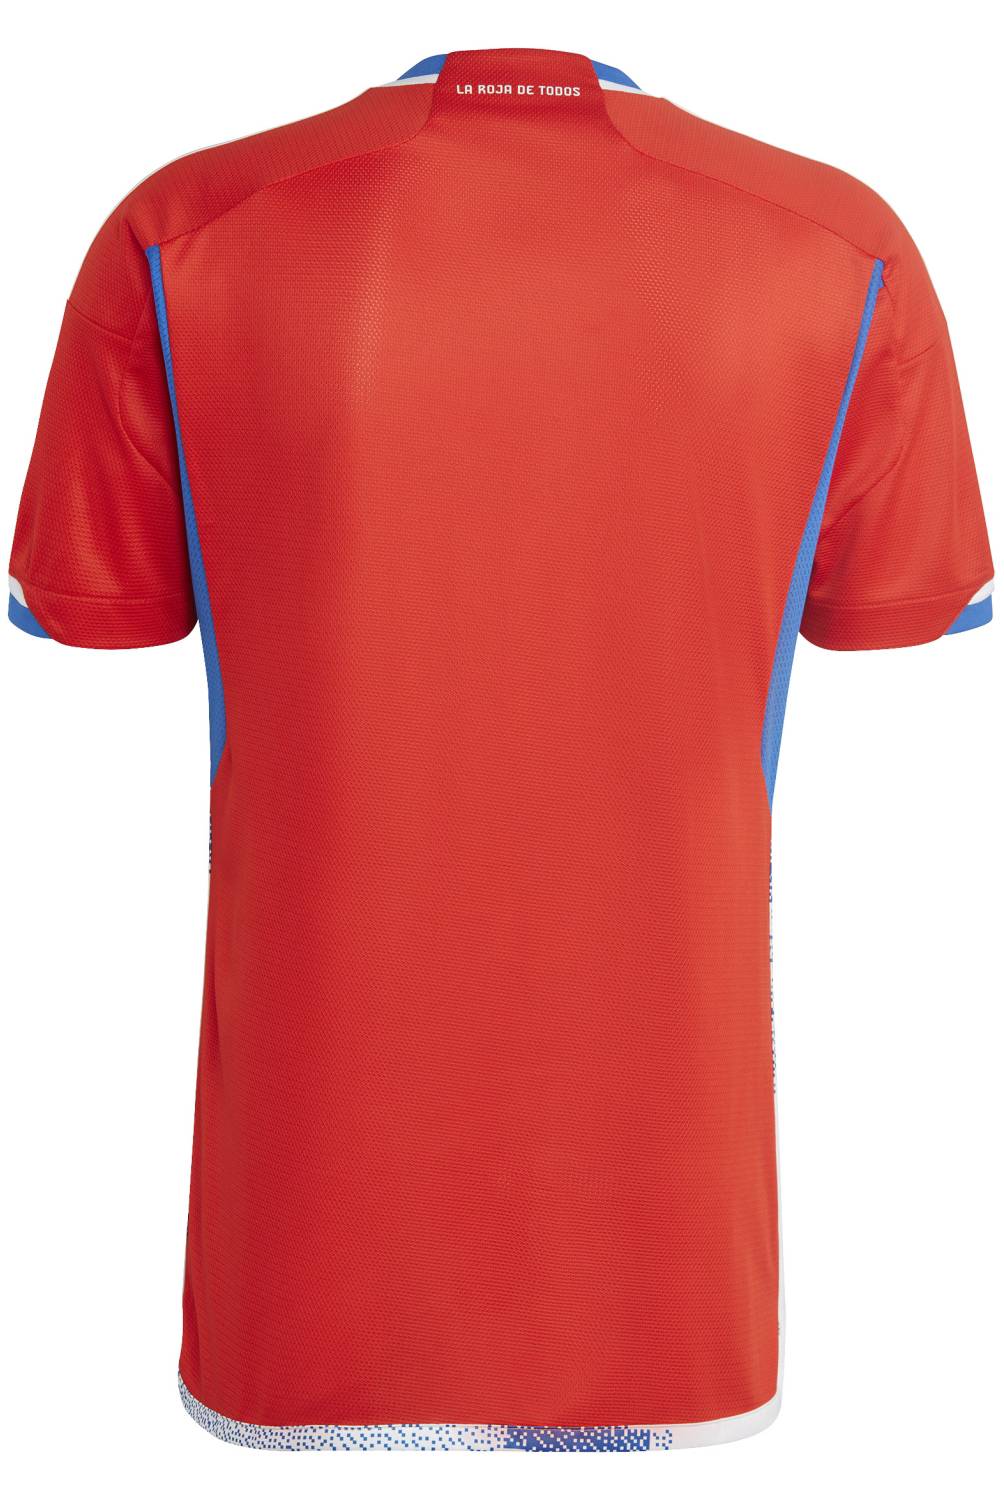 ADIDAS - Camiseta De Fútbol Selección Chilena Local Hombre Adidas